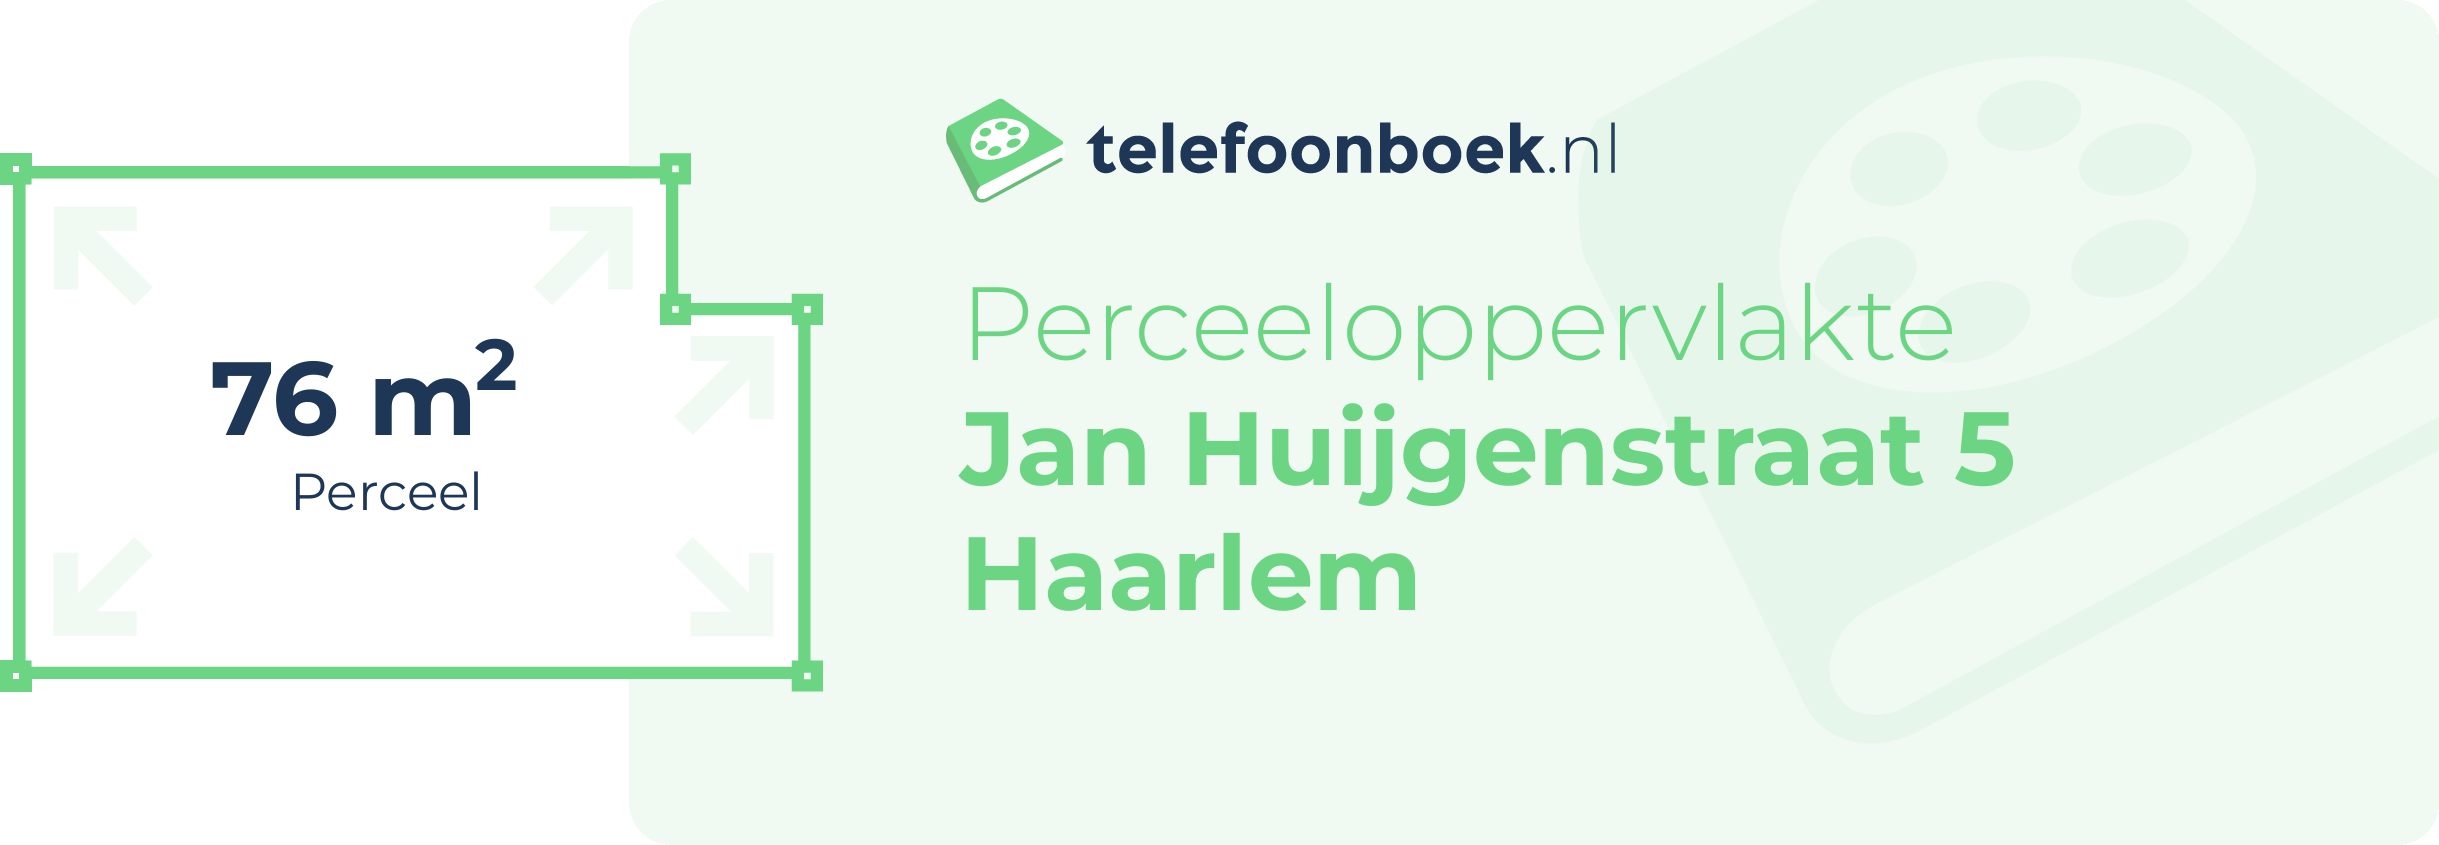 Perceeloppervlakte Jan Huijgenstraat 5 Haarlem